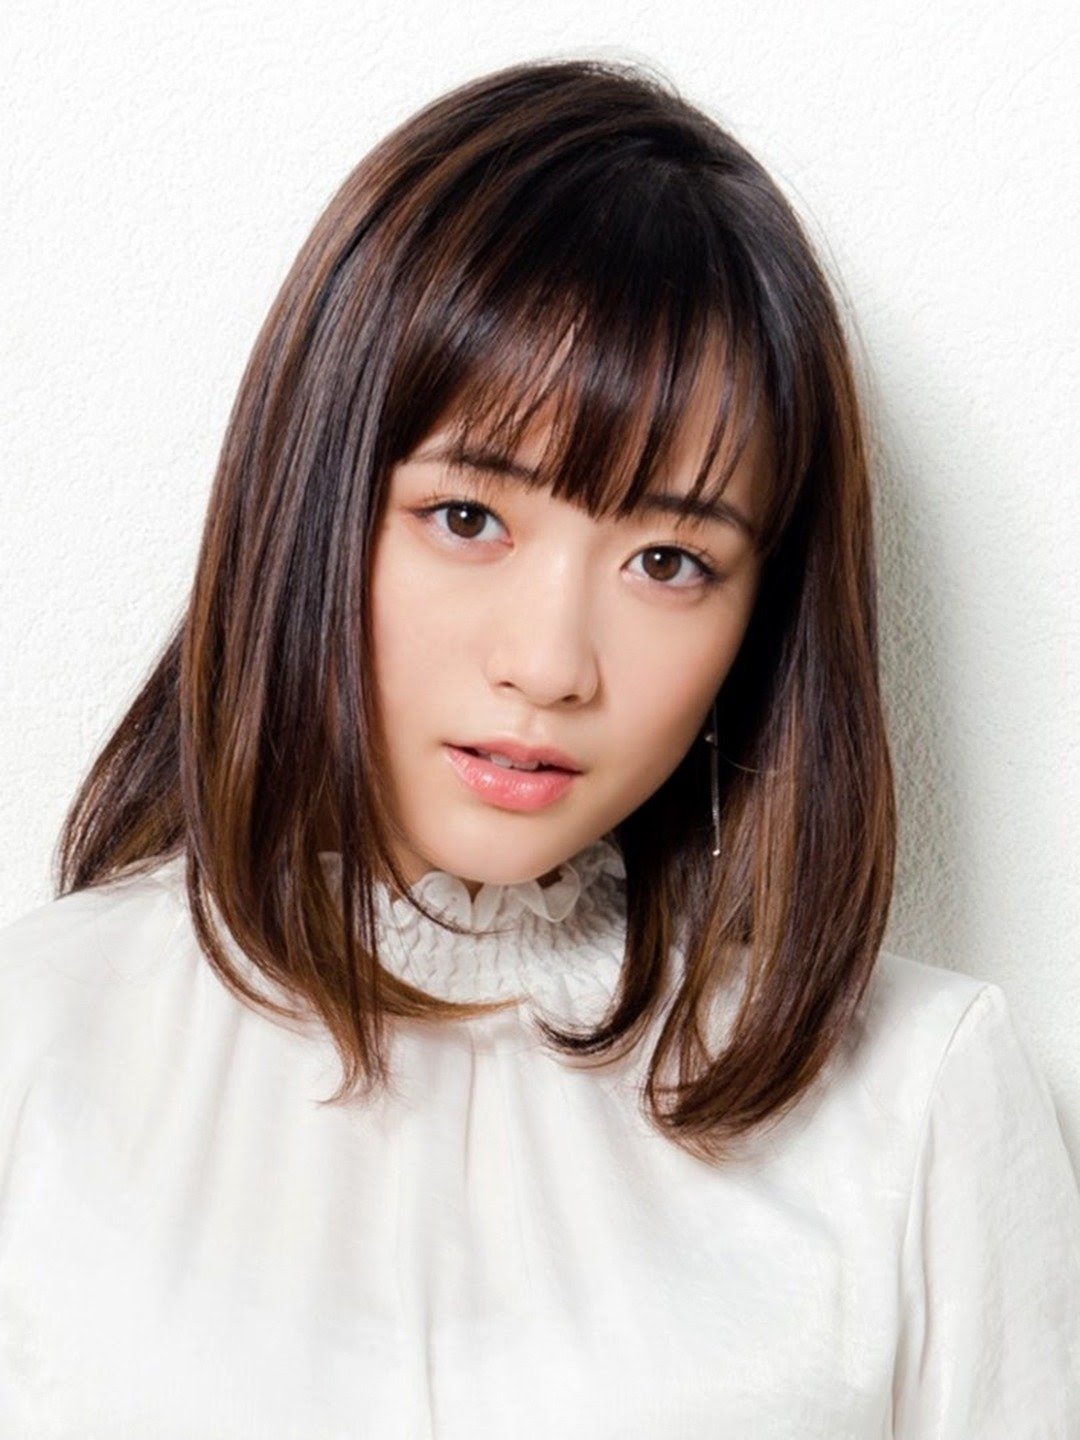 Sakurako Ohara Japanese Actress, Singer